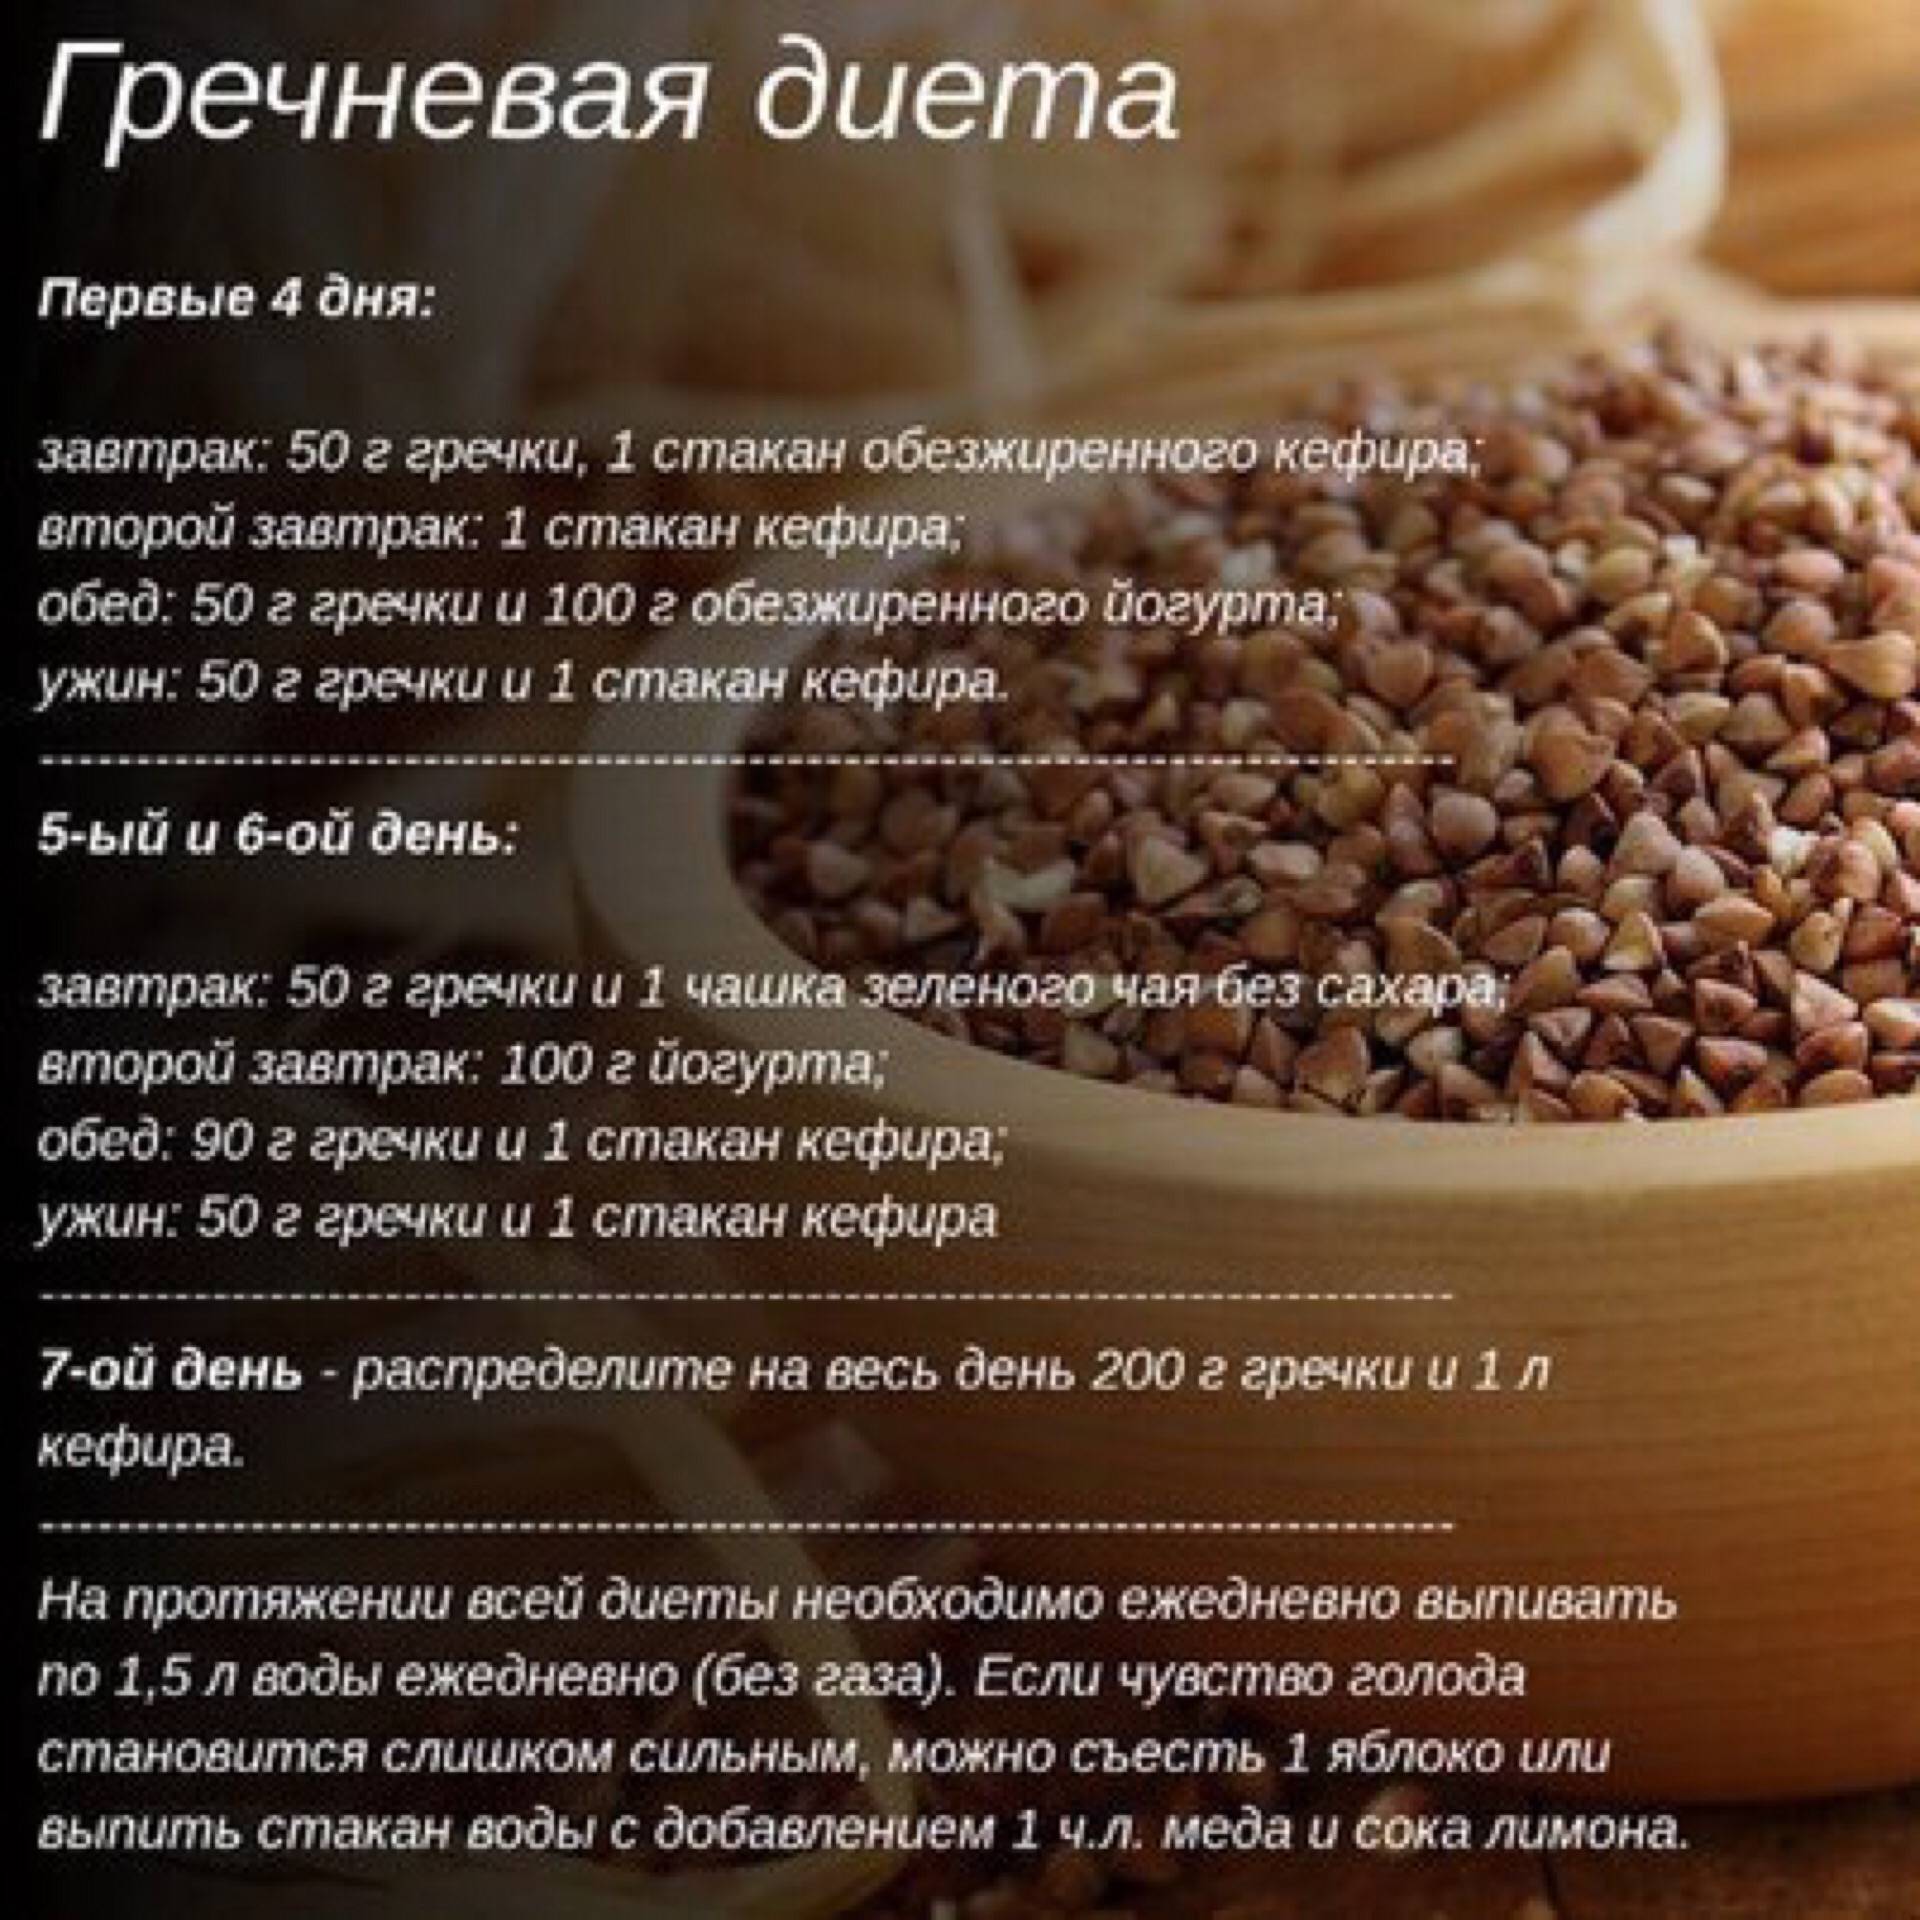 Кефирная диета - 10 кг за 7 дней. отзывы и результаты похудения за 3 дня - medside.ru